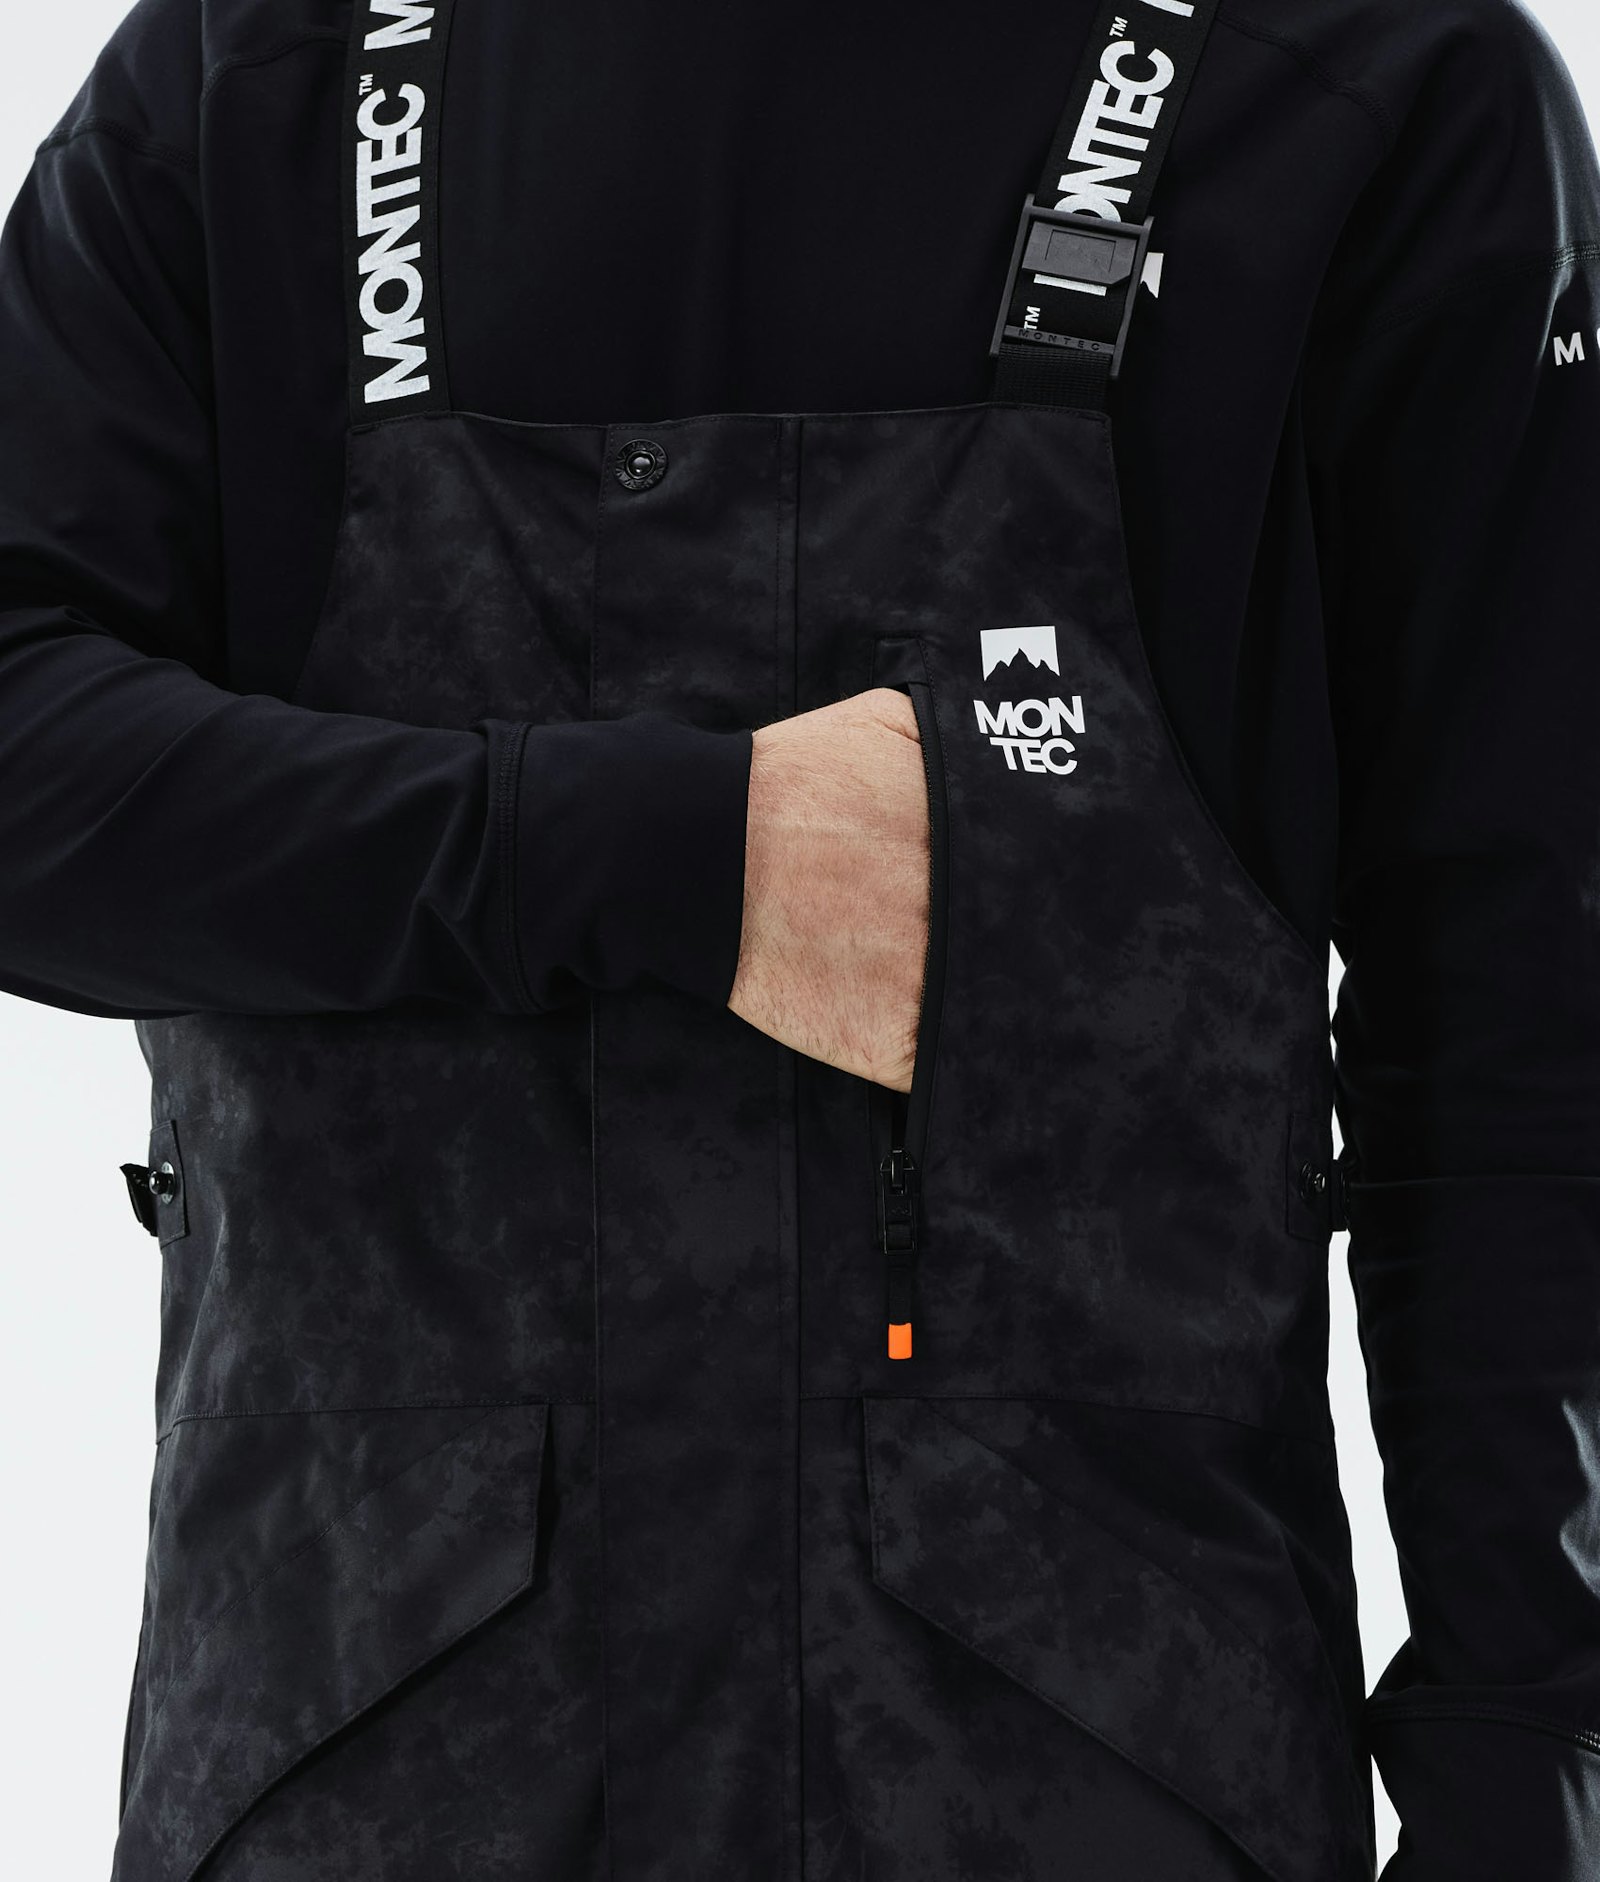 Fawk 2021 Pantalon de Snowboard Homme Black Tiedye Renewed